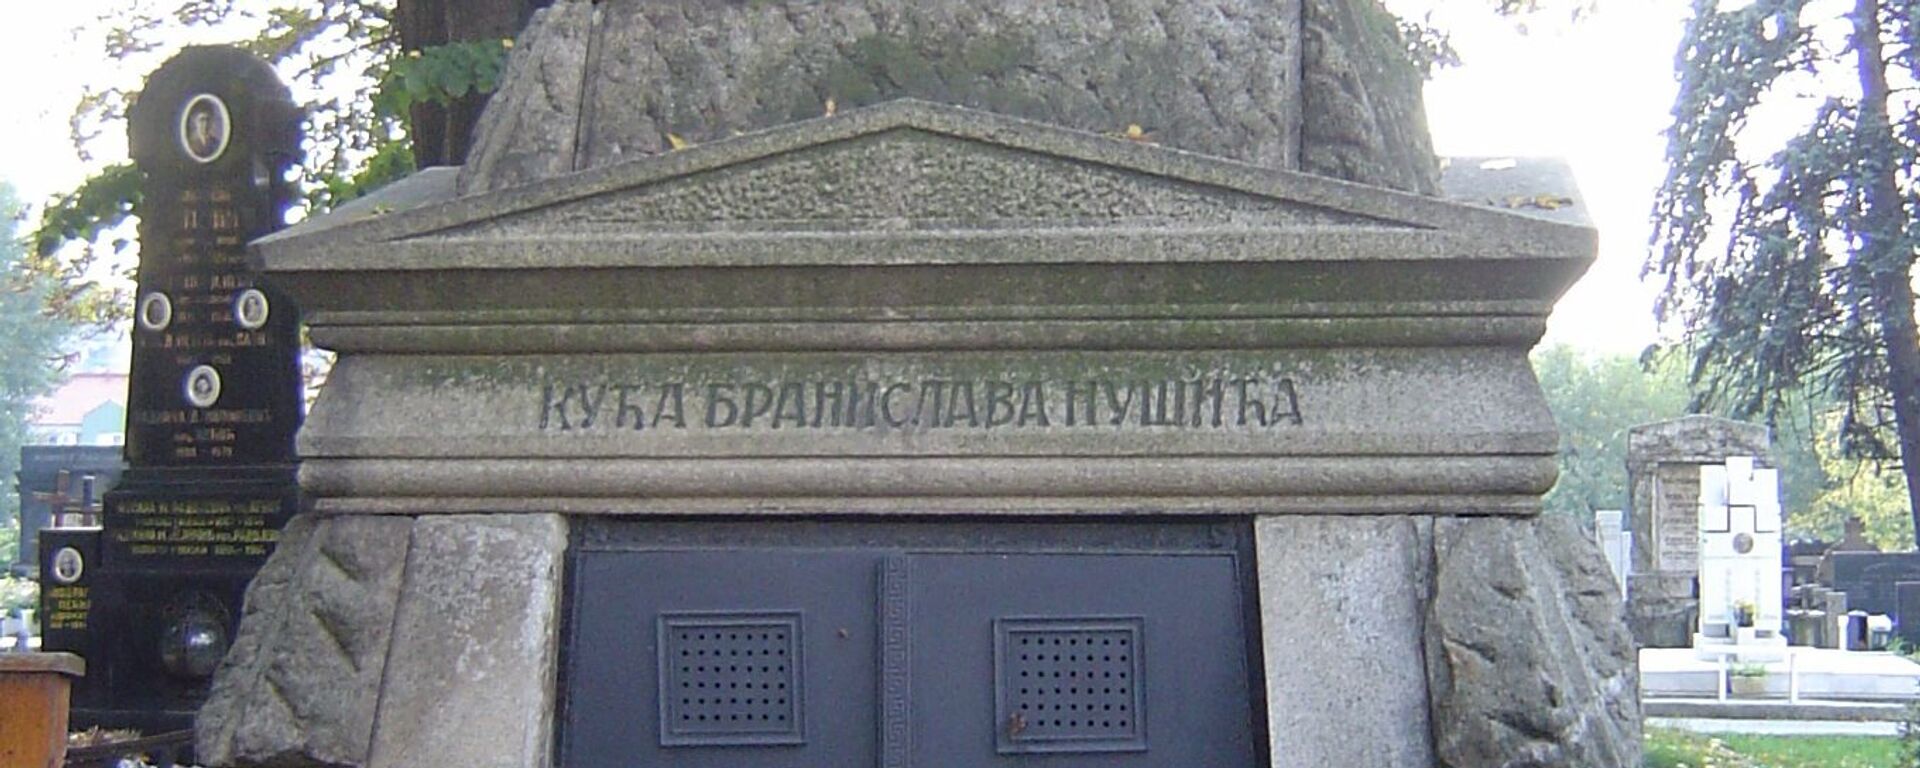 Grob Branislava Nušića - Sputnik Srbija, 1920, 22.08.2020